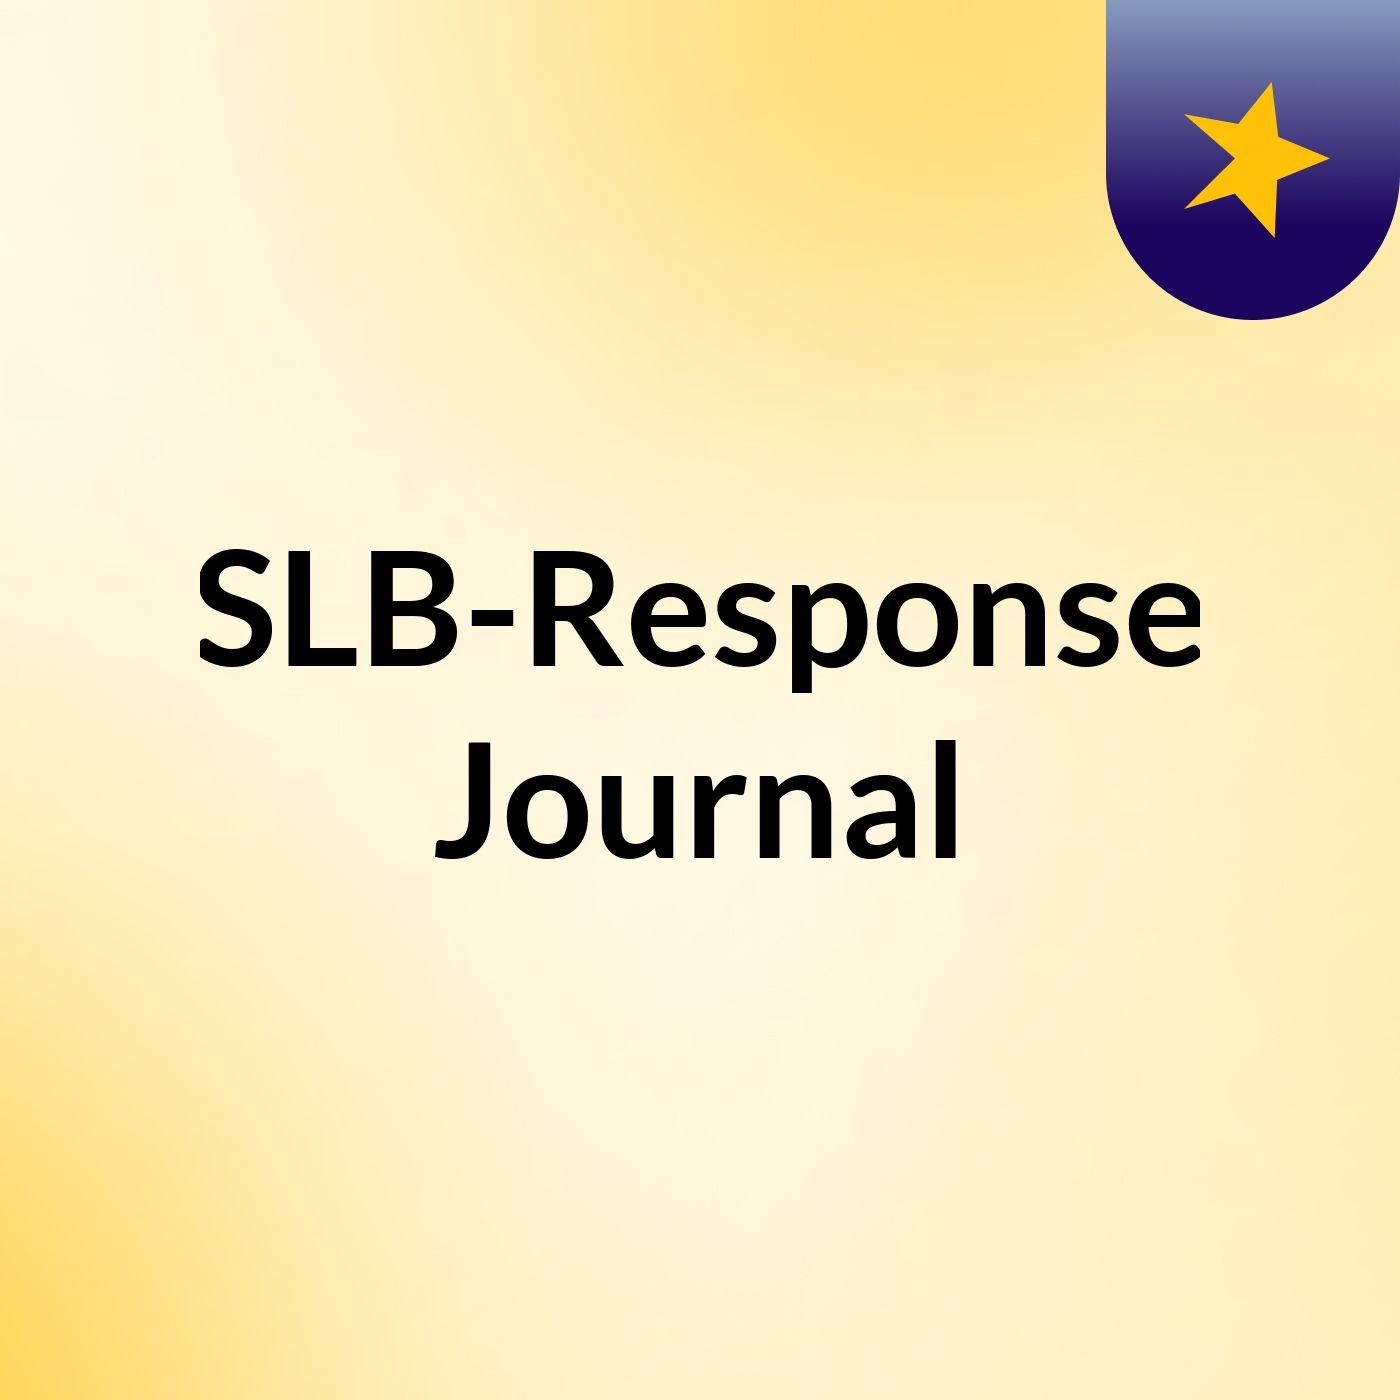 Episode 3 - SLB-Response Journal